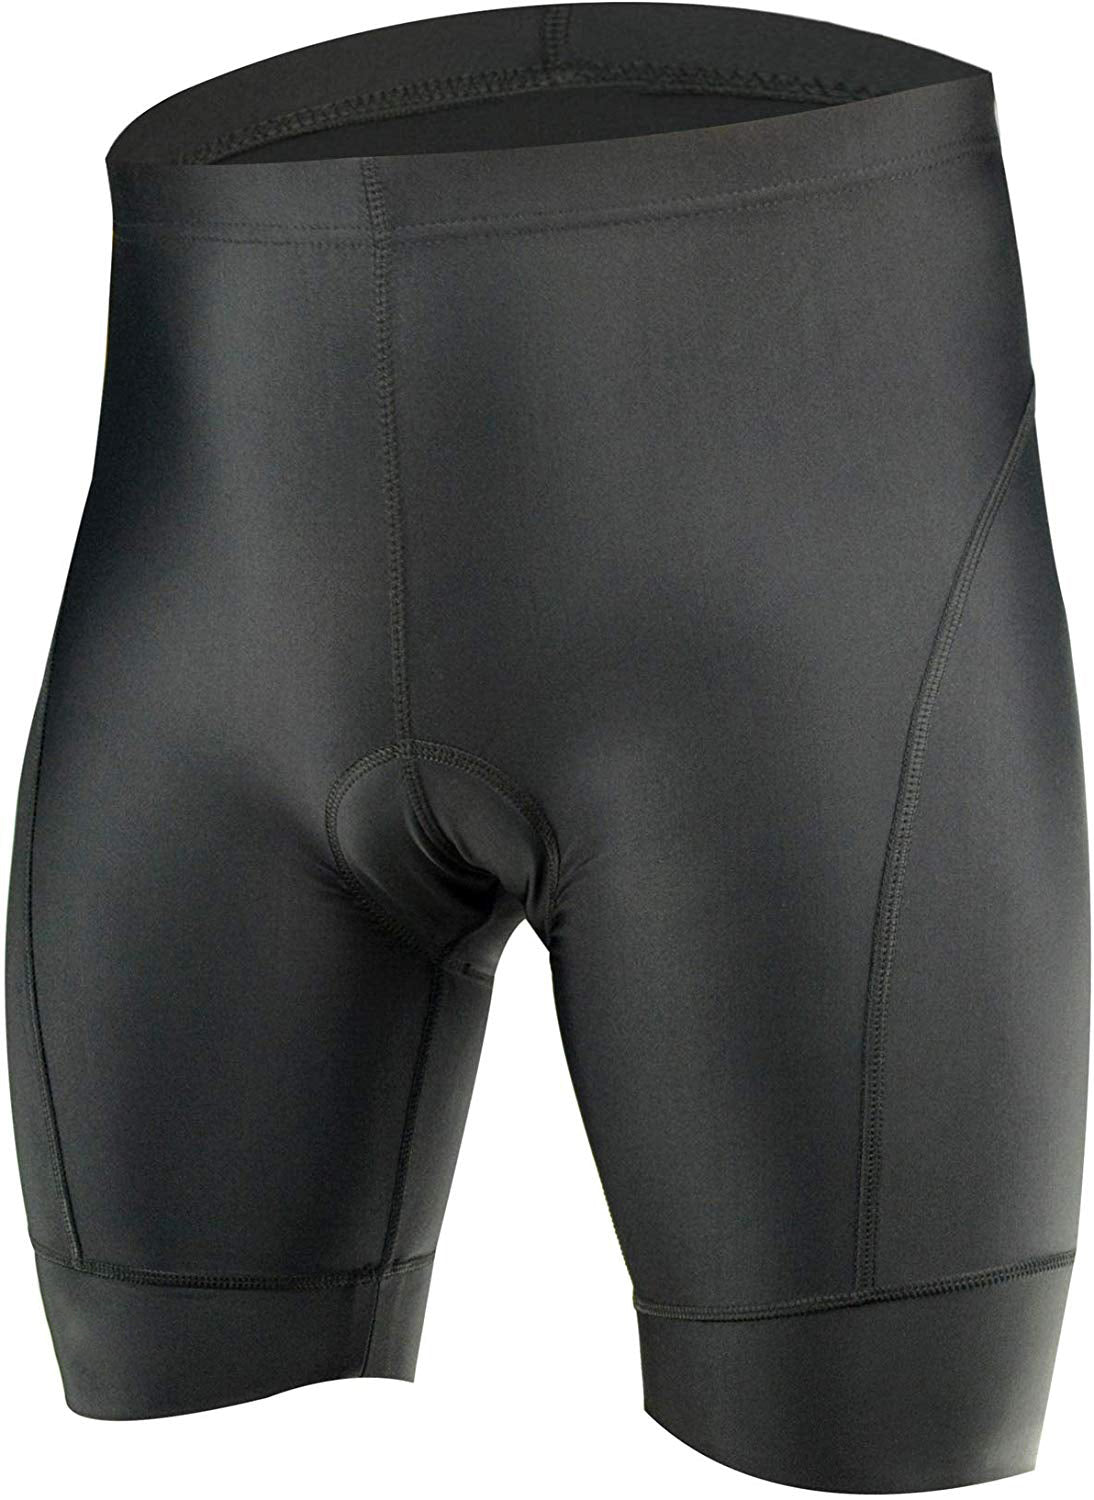 elastic cycling shorts